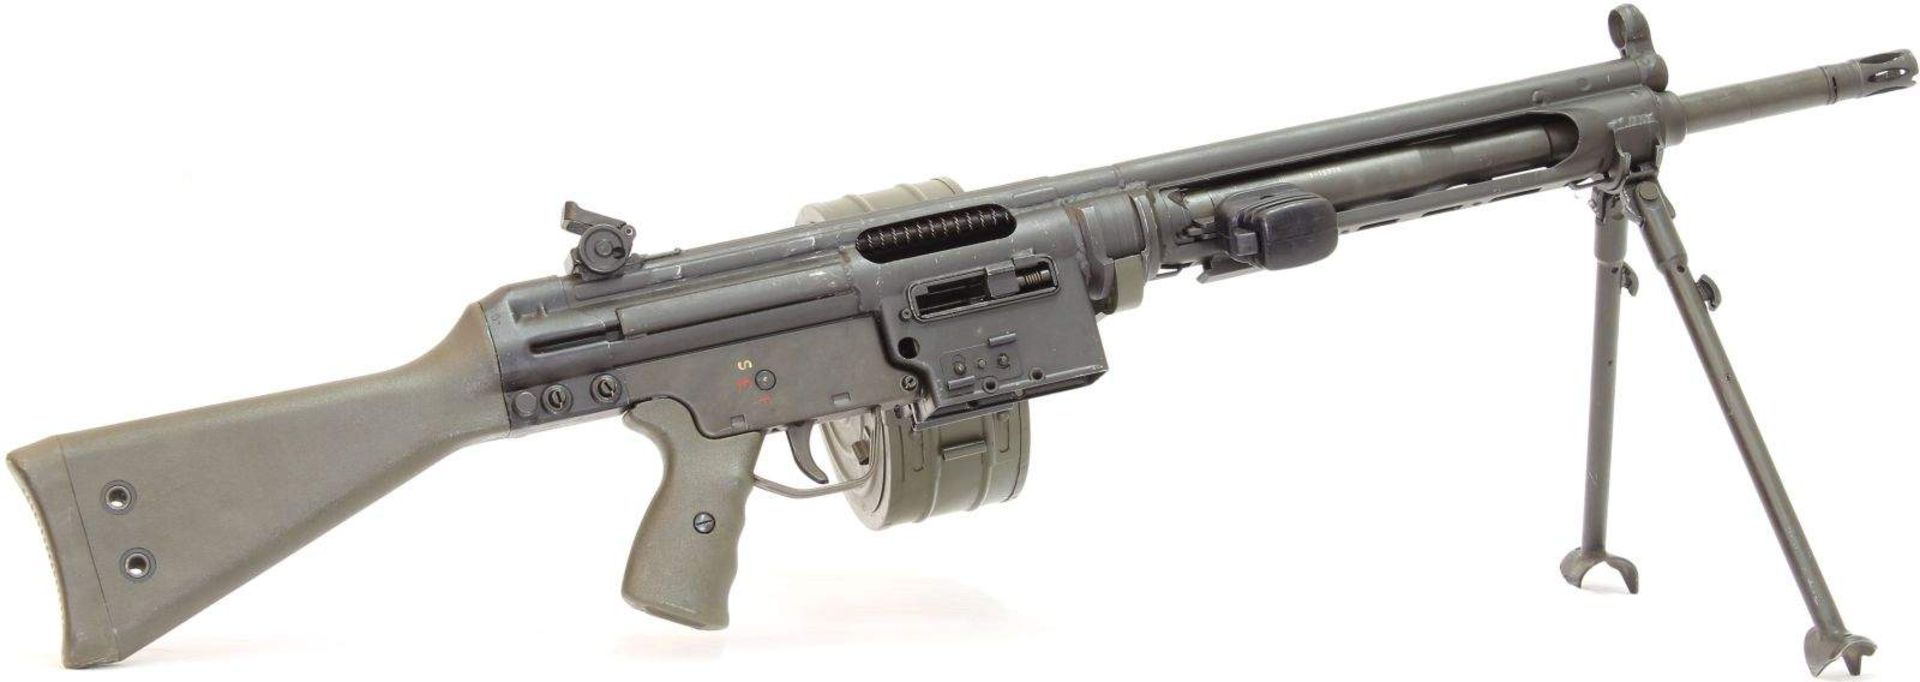 Universal-Maschinengewehr, port. HK Mod. 21, hergestellt bei FMP, Kal. .308. LL 450mm, TL 1030mm,